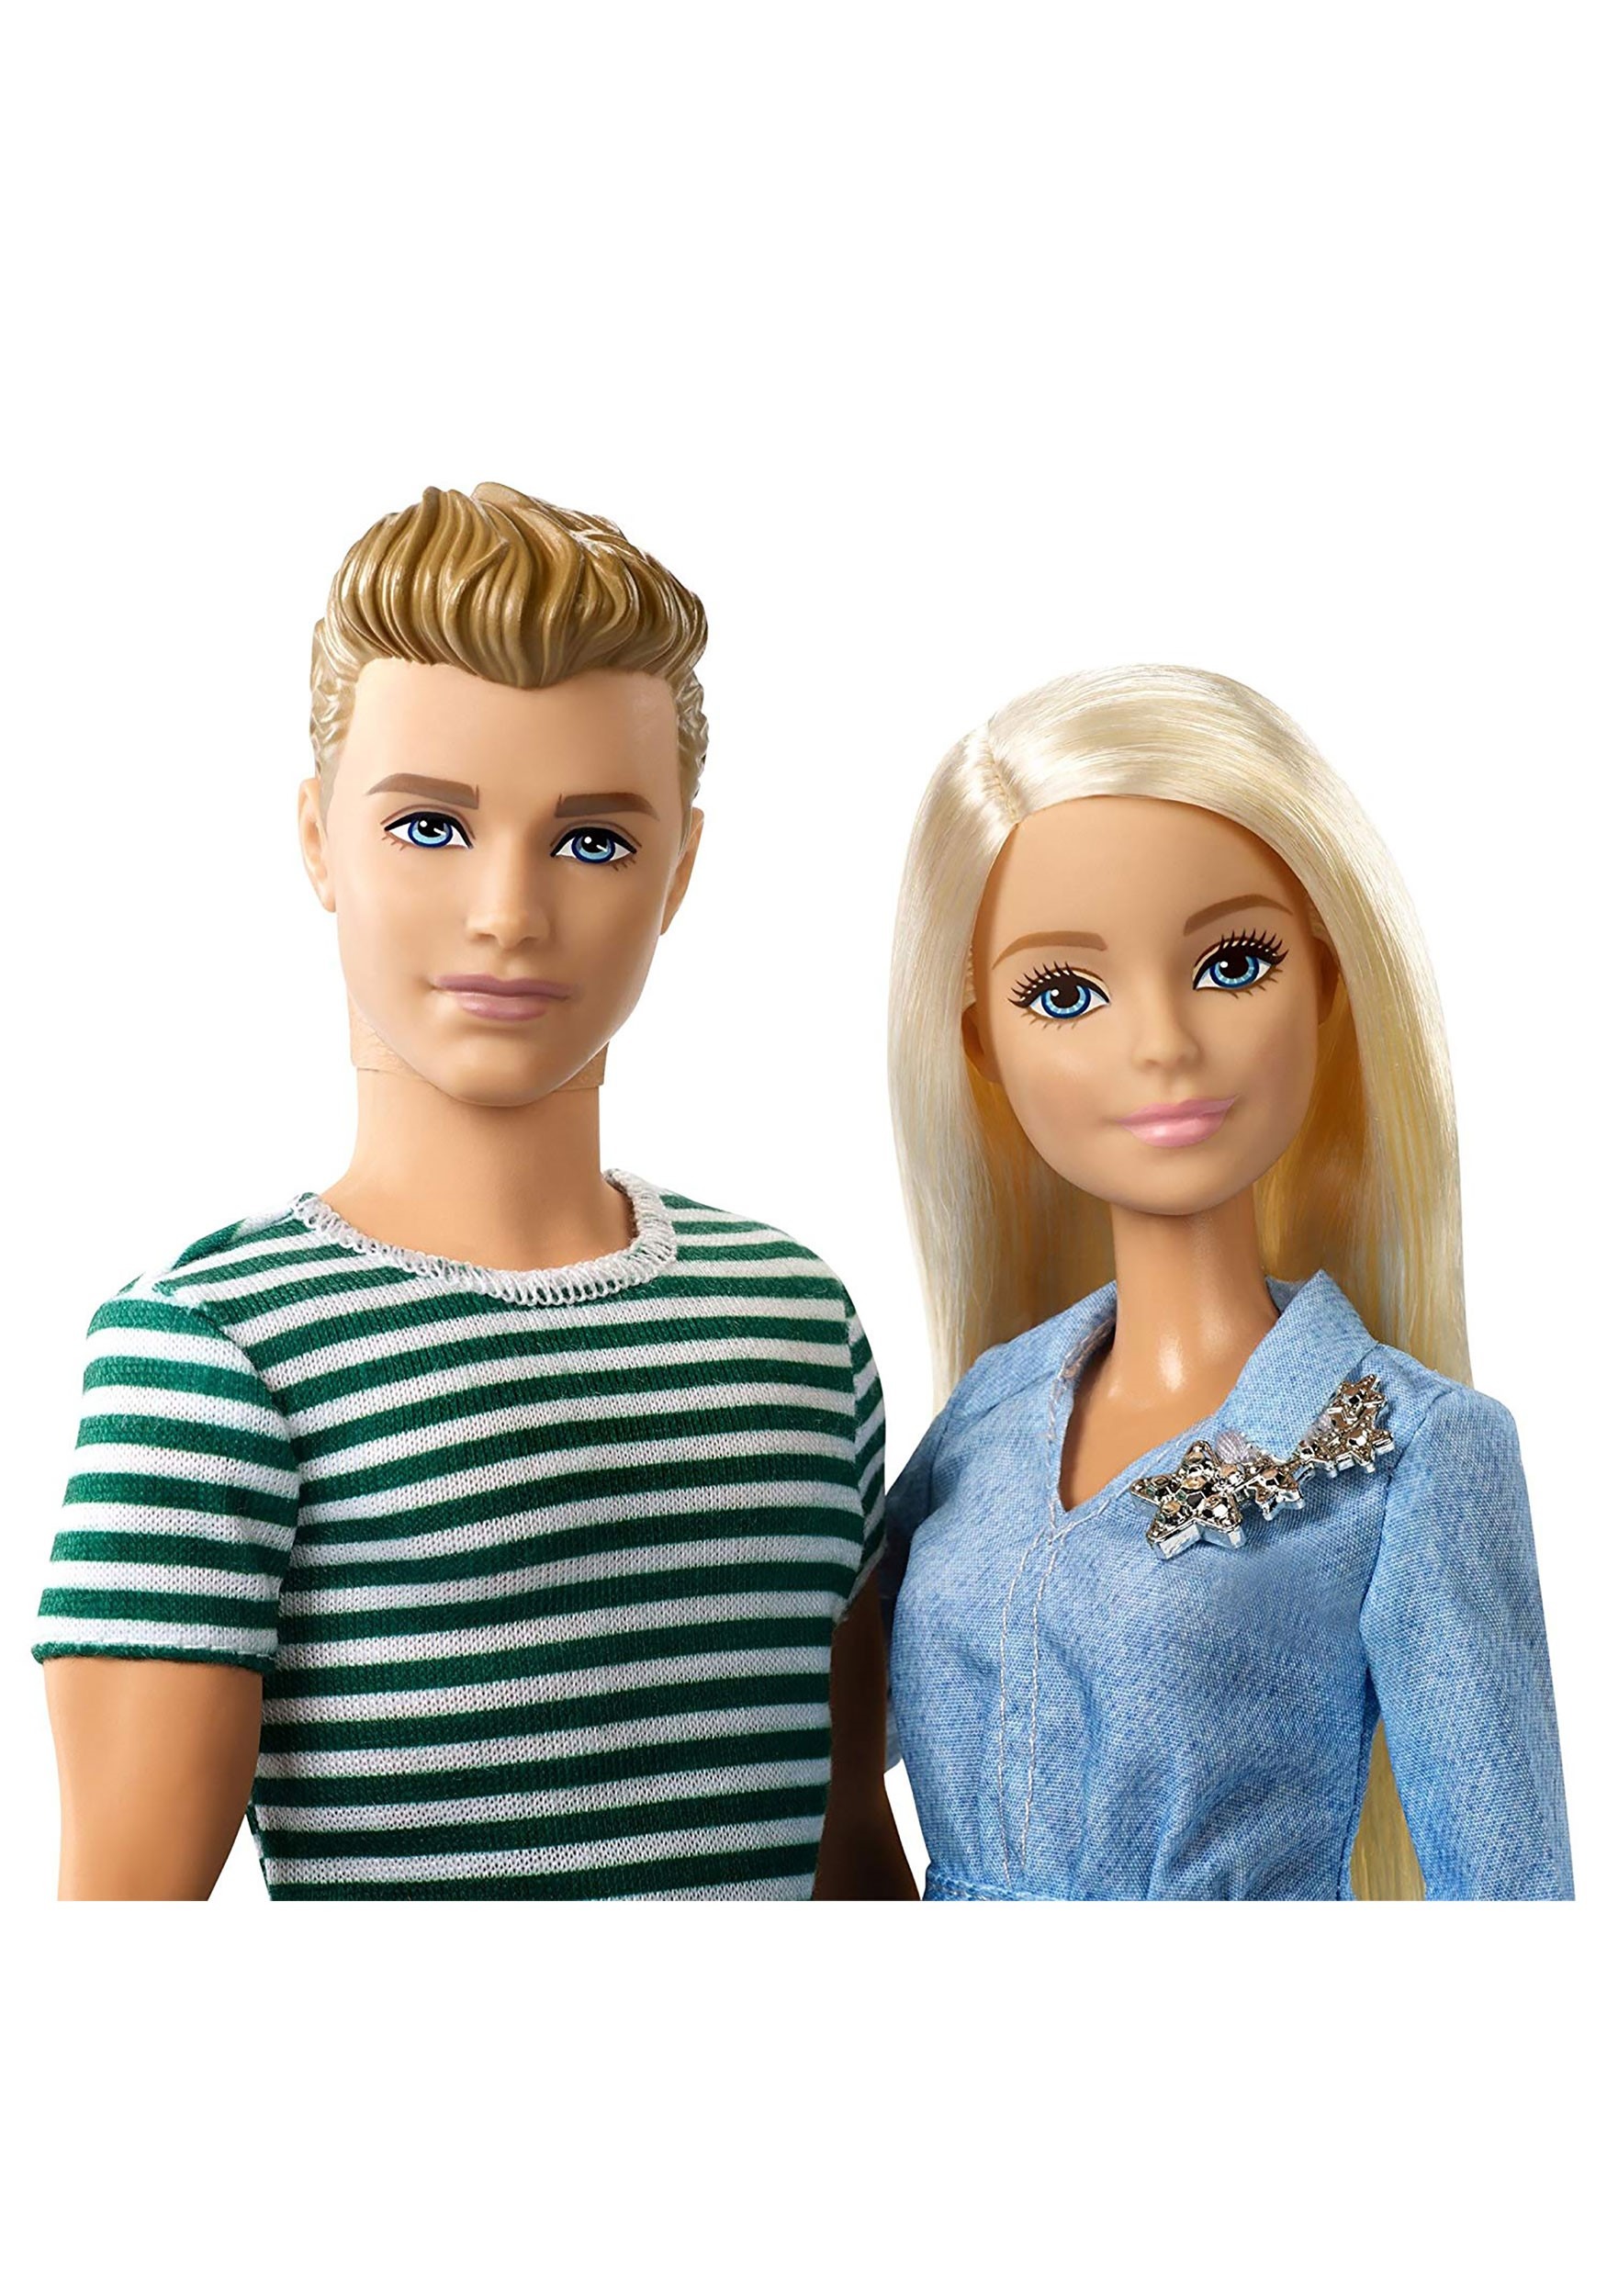 ken ken and barbie